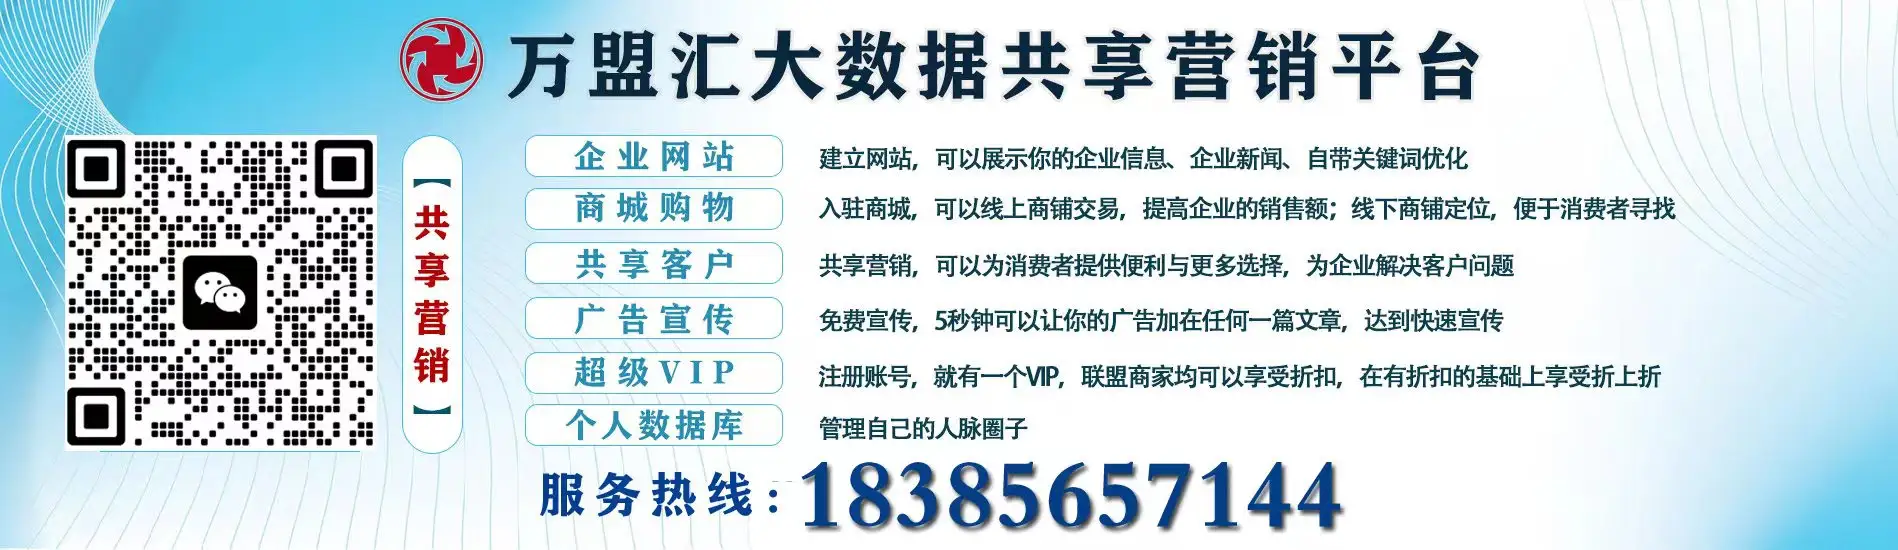 贵州昊阳信息科技助贷有限公司